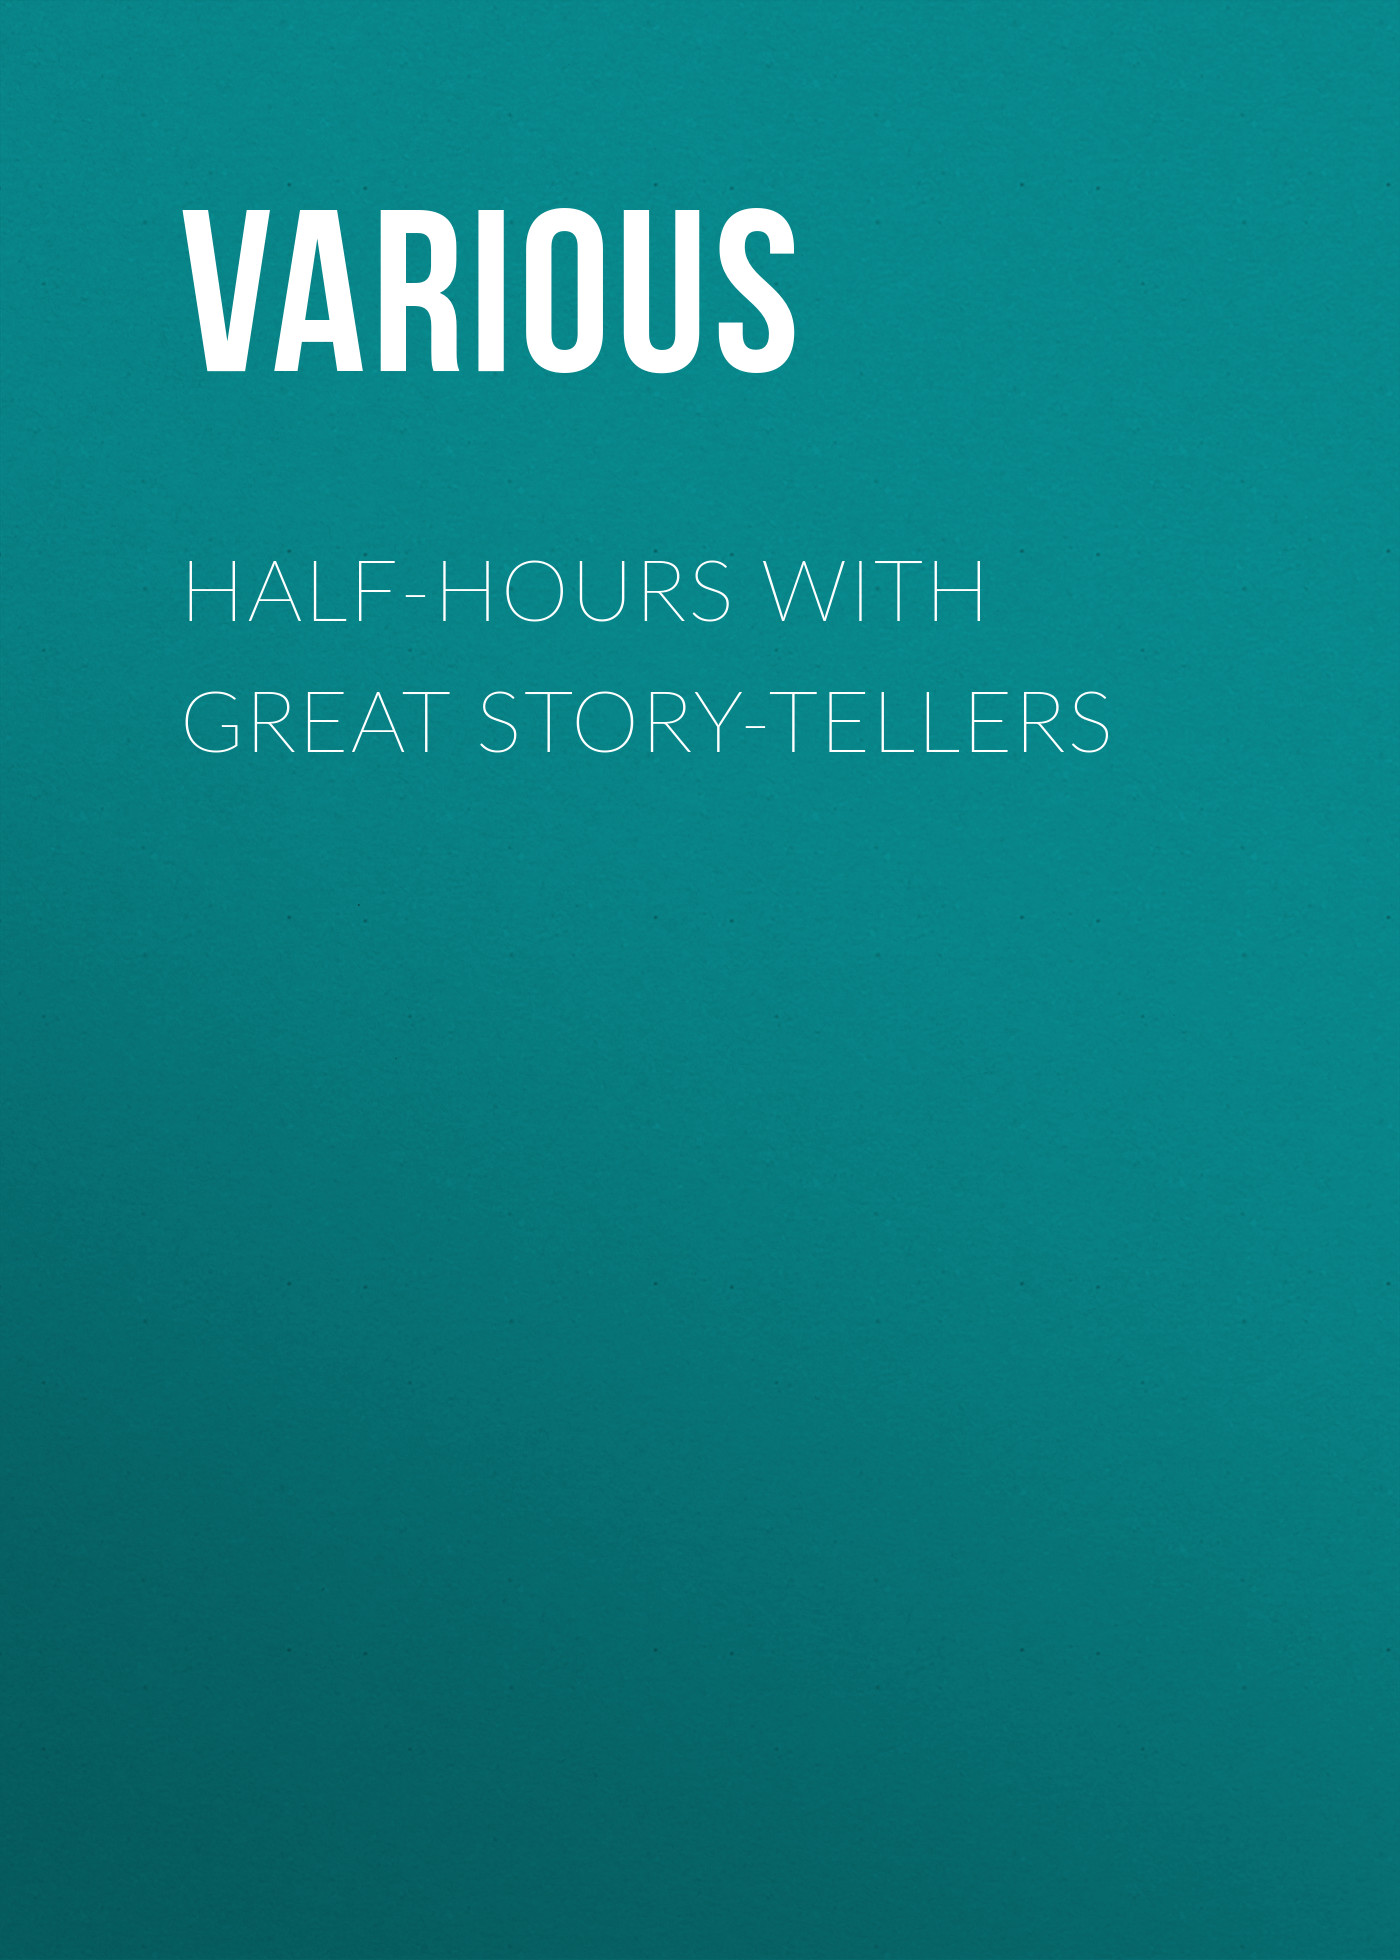 Книга Half-Hours with Great Story-Tellers из серии , созданная  Various, может относится к жанру Зарубежная классика, Зарубежная старинная литература. Стоимость электронной книги Half-Hours with Great Story-Tellers с идентификатором 35496207 составляет 0 руб.